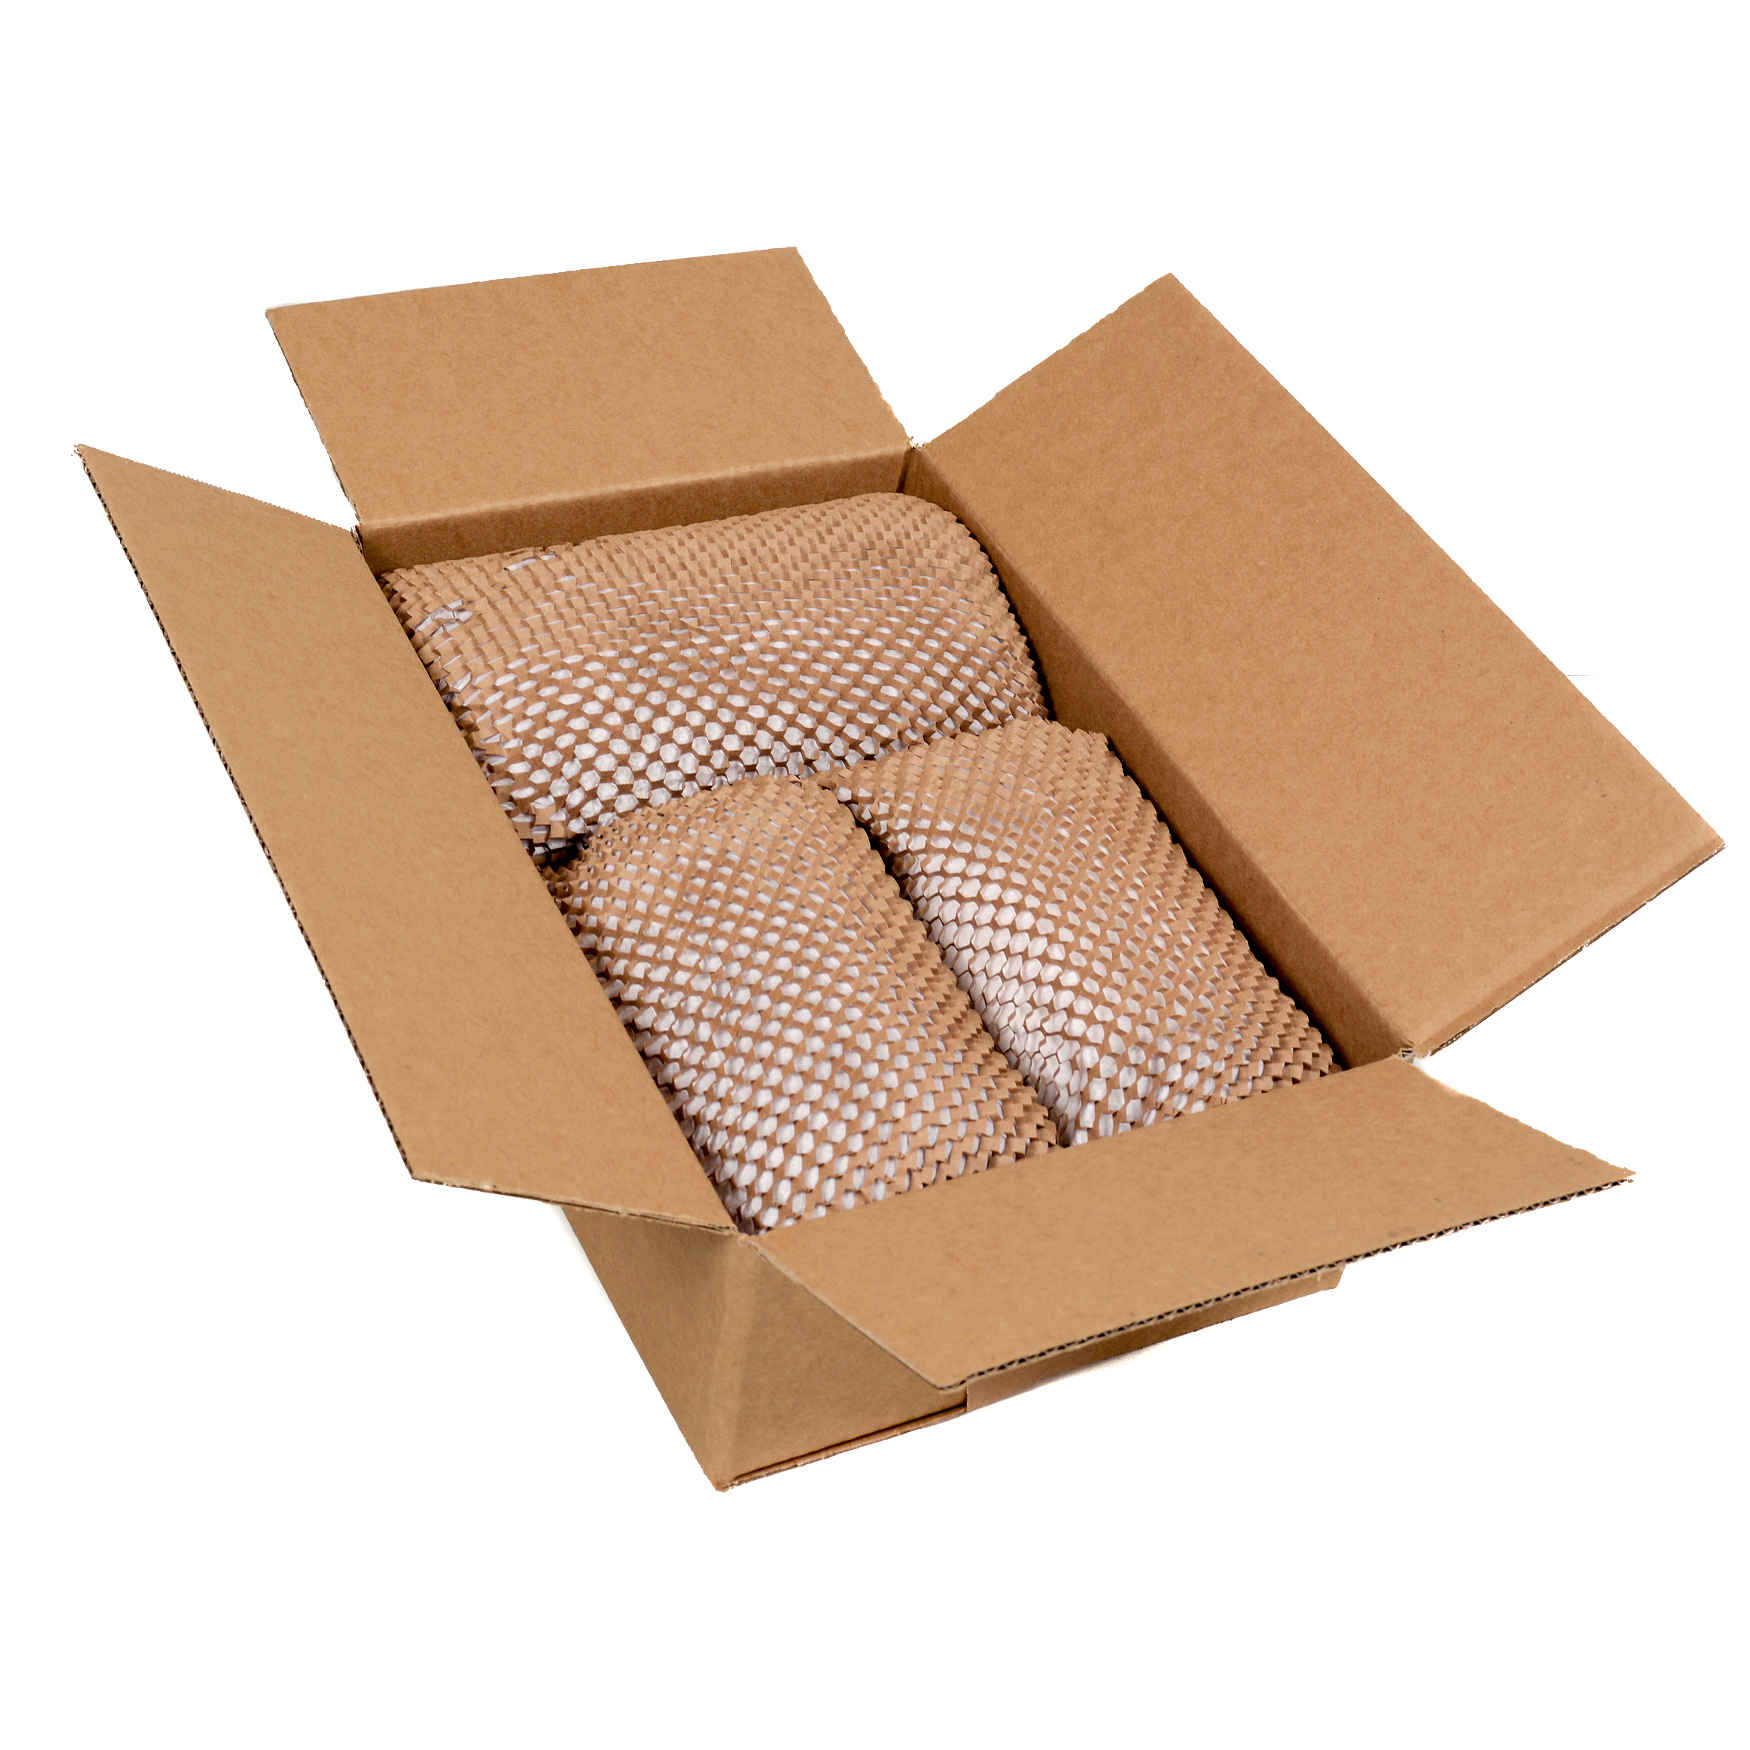 geami verpackt im karton - Verpackungssysteme